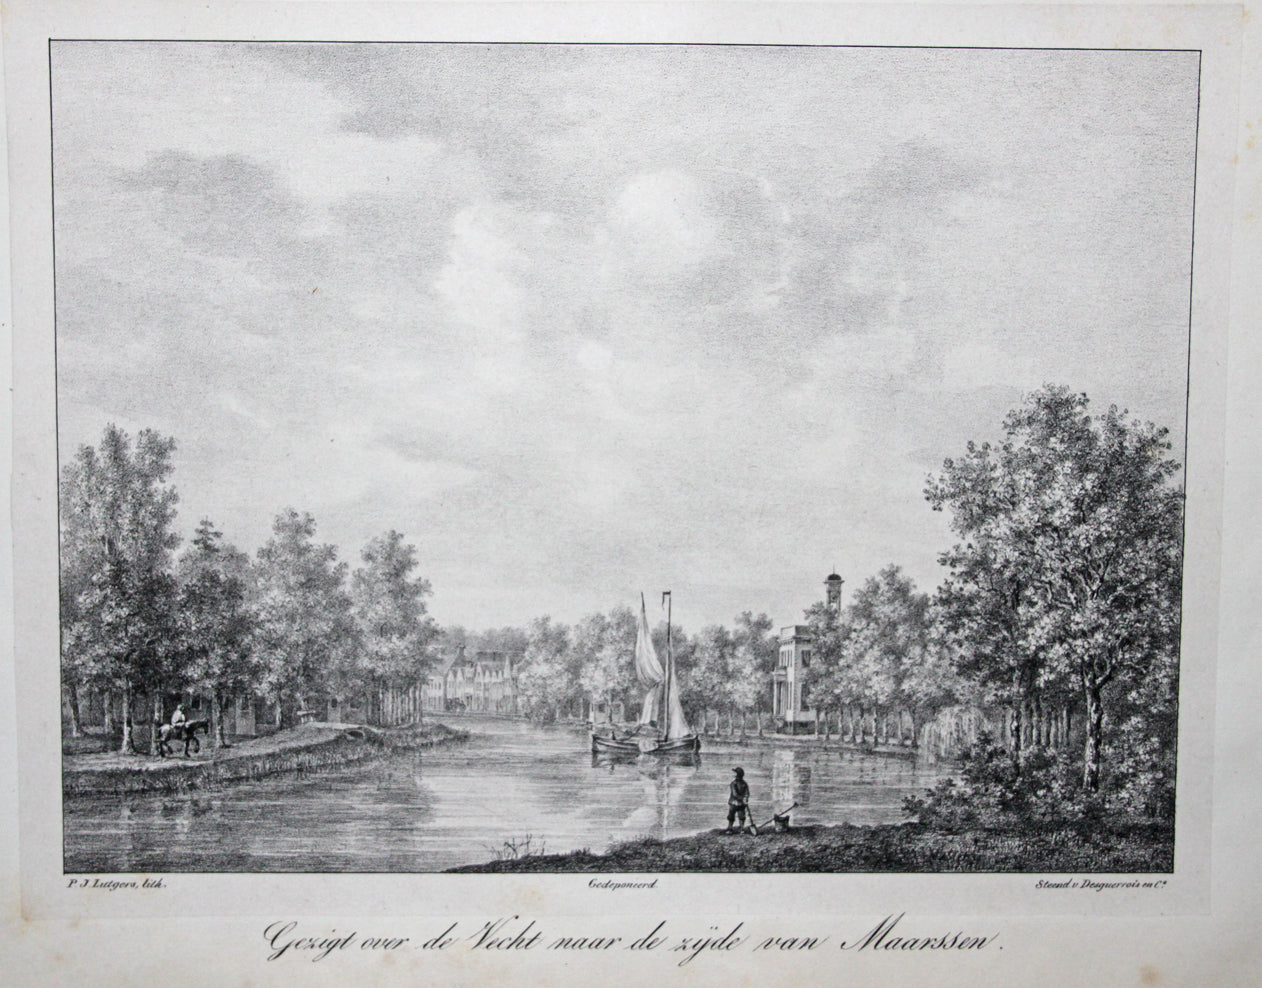 MAARSSEN - Lutgers / Desguerrois & Co - 1836